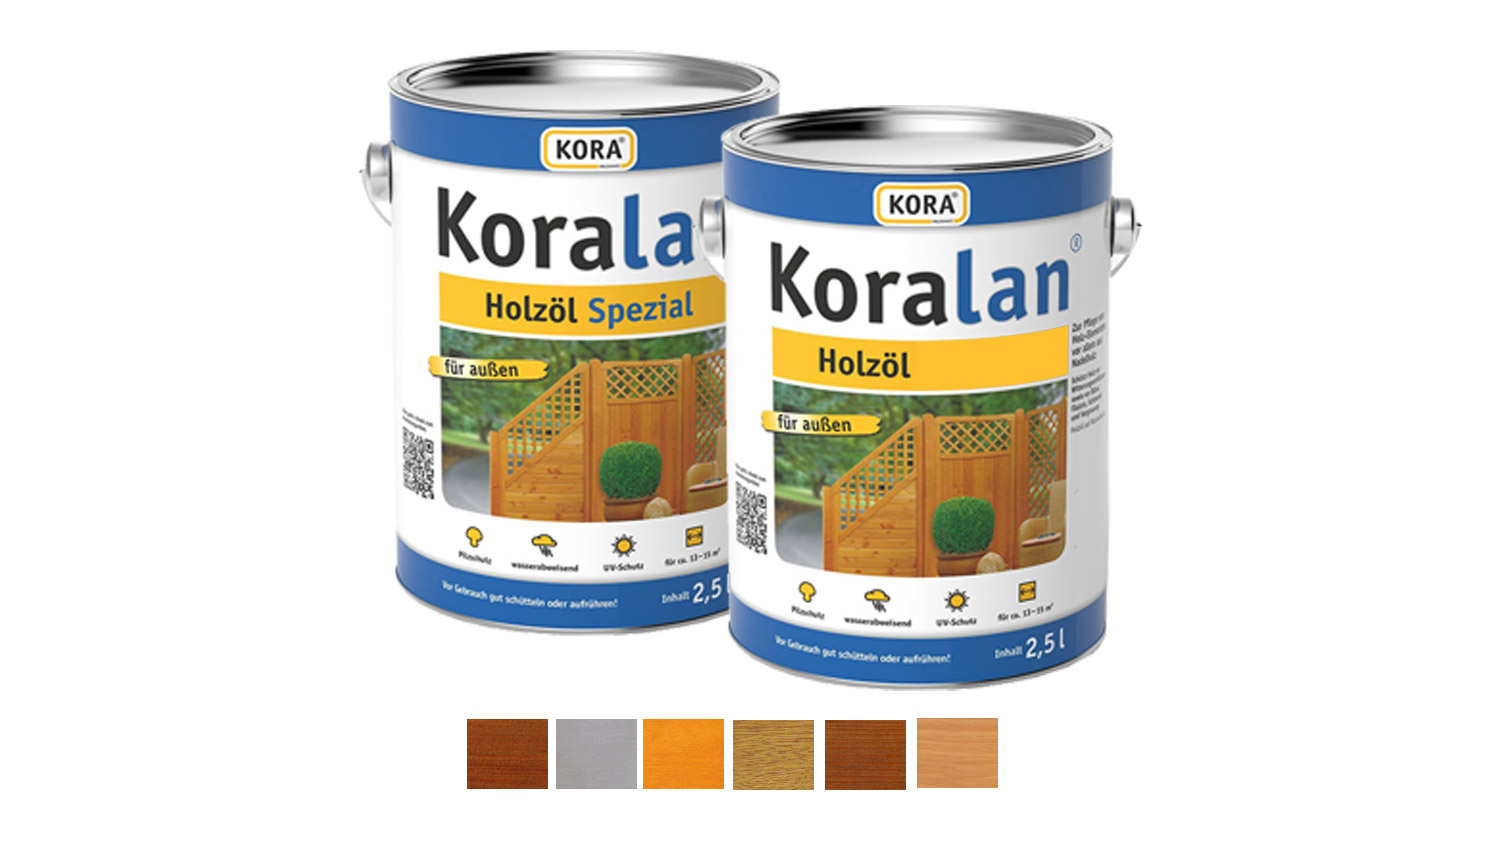 Koralan Holzöl / Holzöl Spezial 